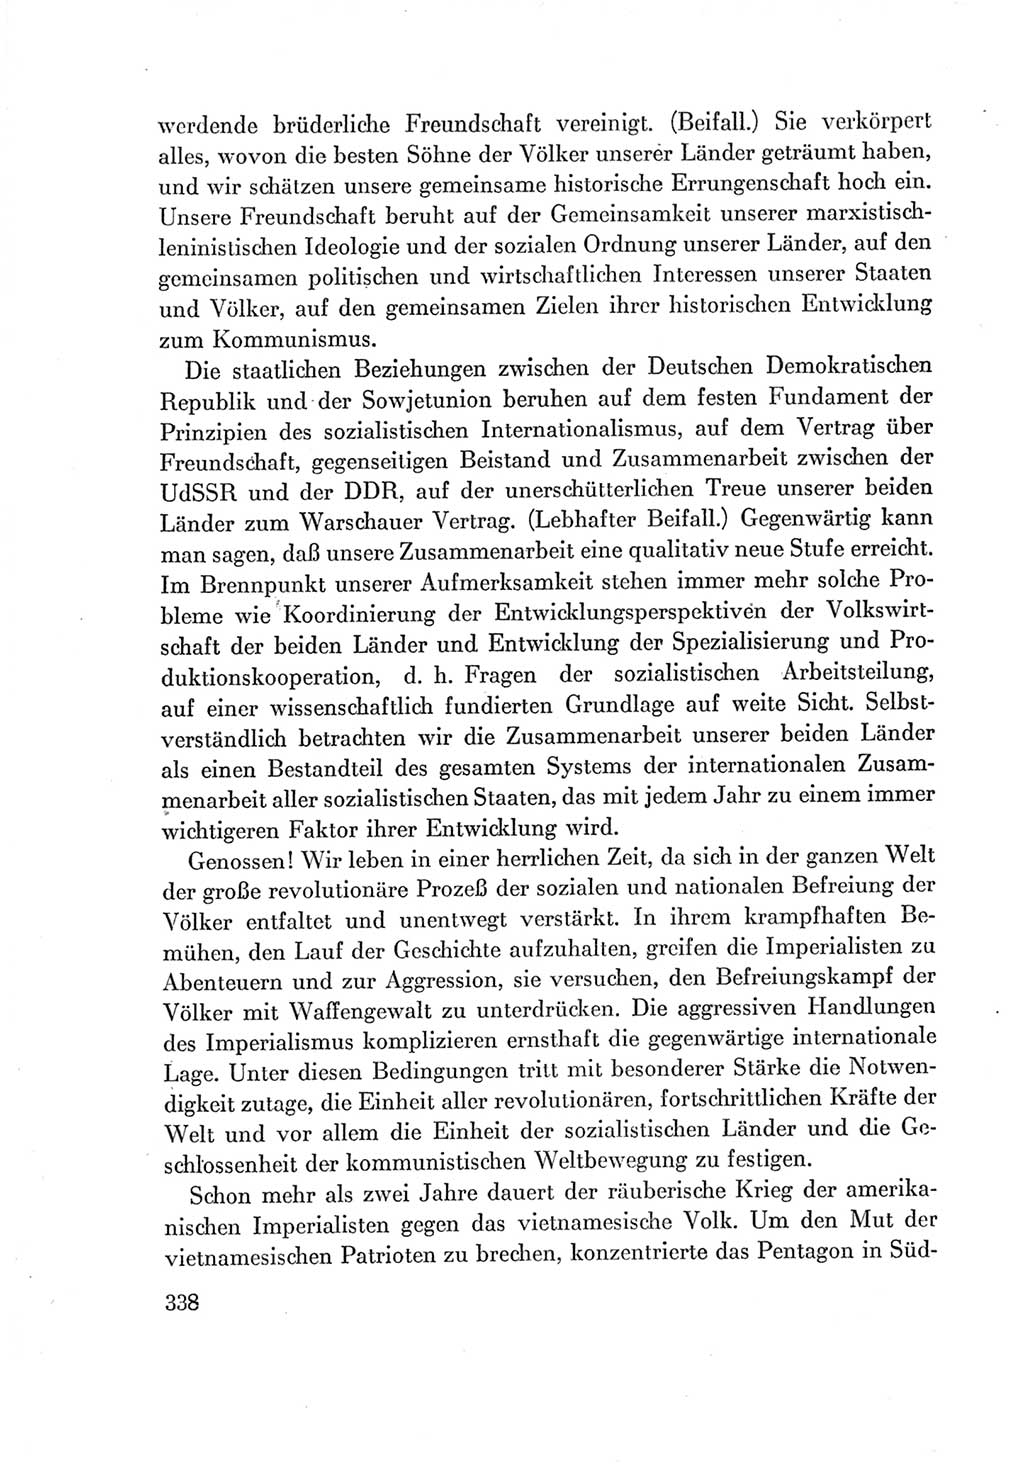 Protokoll der Verhandlungen des Ⅶ. Parteitages der Sozialistischen Einheitspartei Deutschlands (SED) [Deutsche Demokratische Republik (DDR)] 1967, Band Ⅰ, Seite 338 (Prot. Verh. Ⅶ. PT SED DDR 1967, Bd. Ⅰ, S. 338)